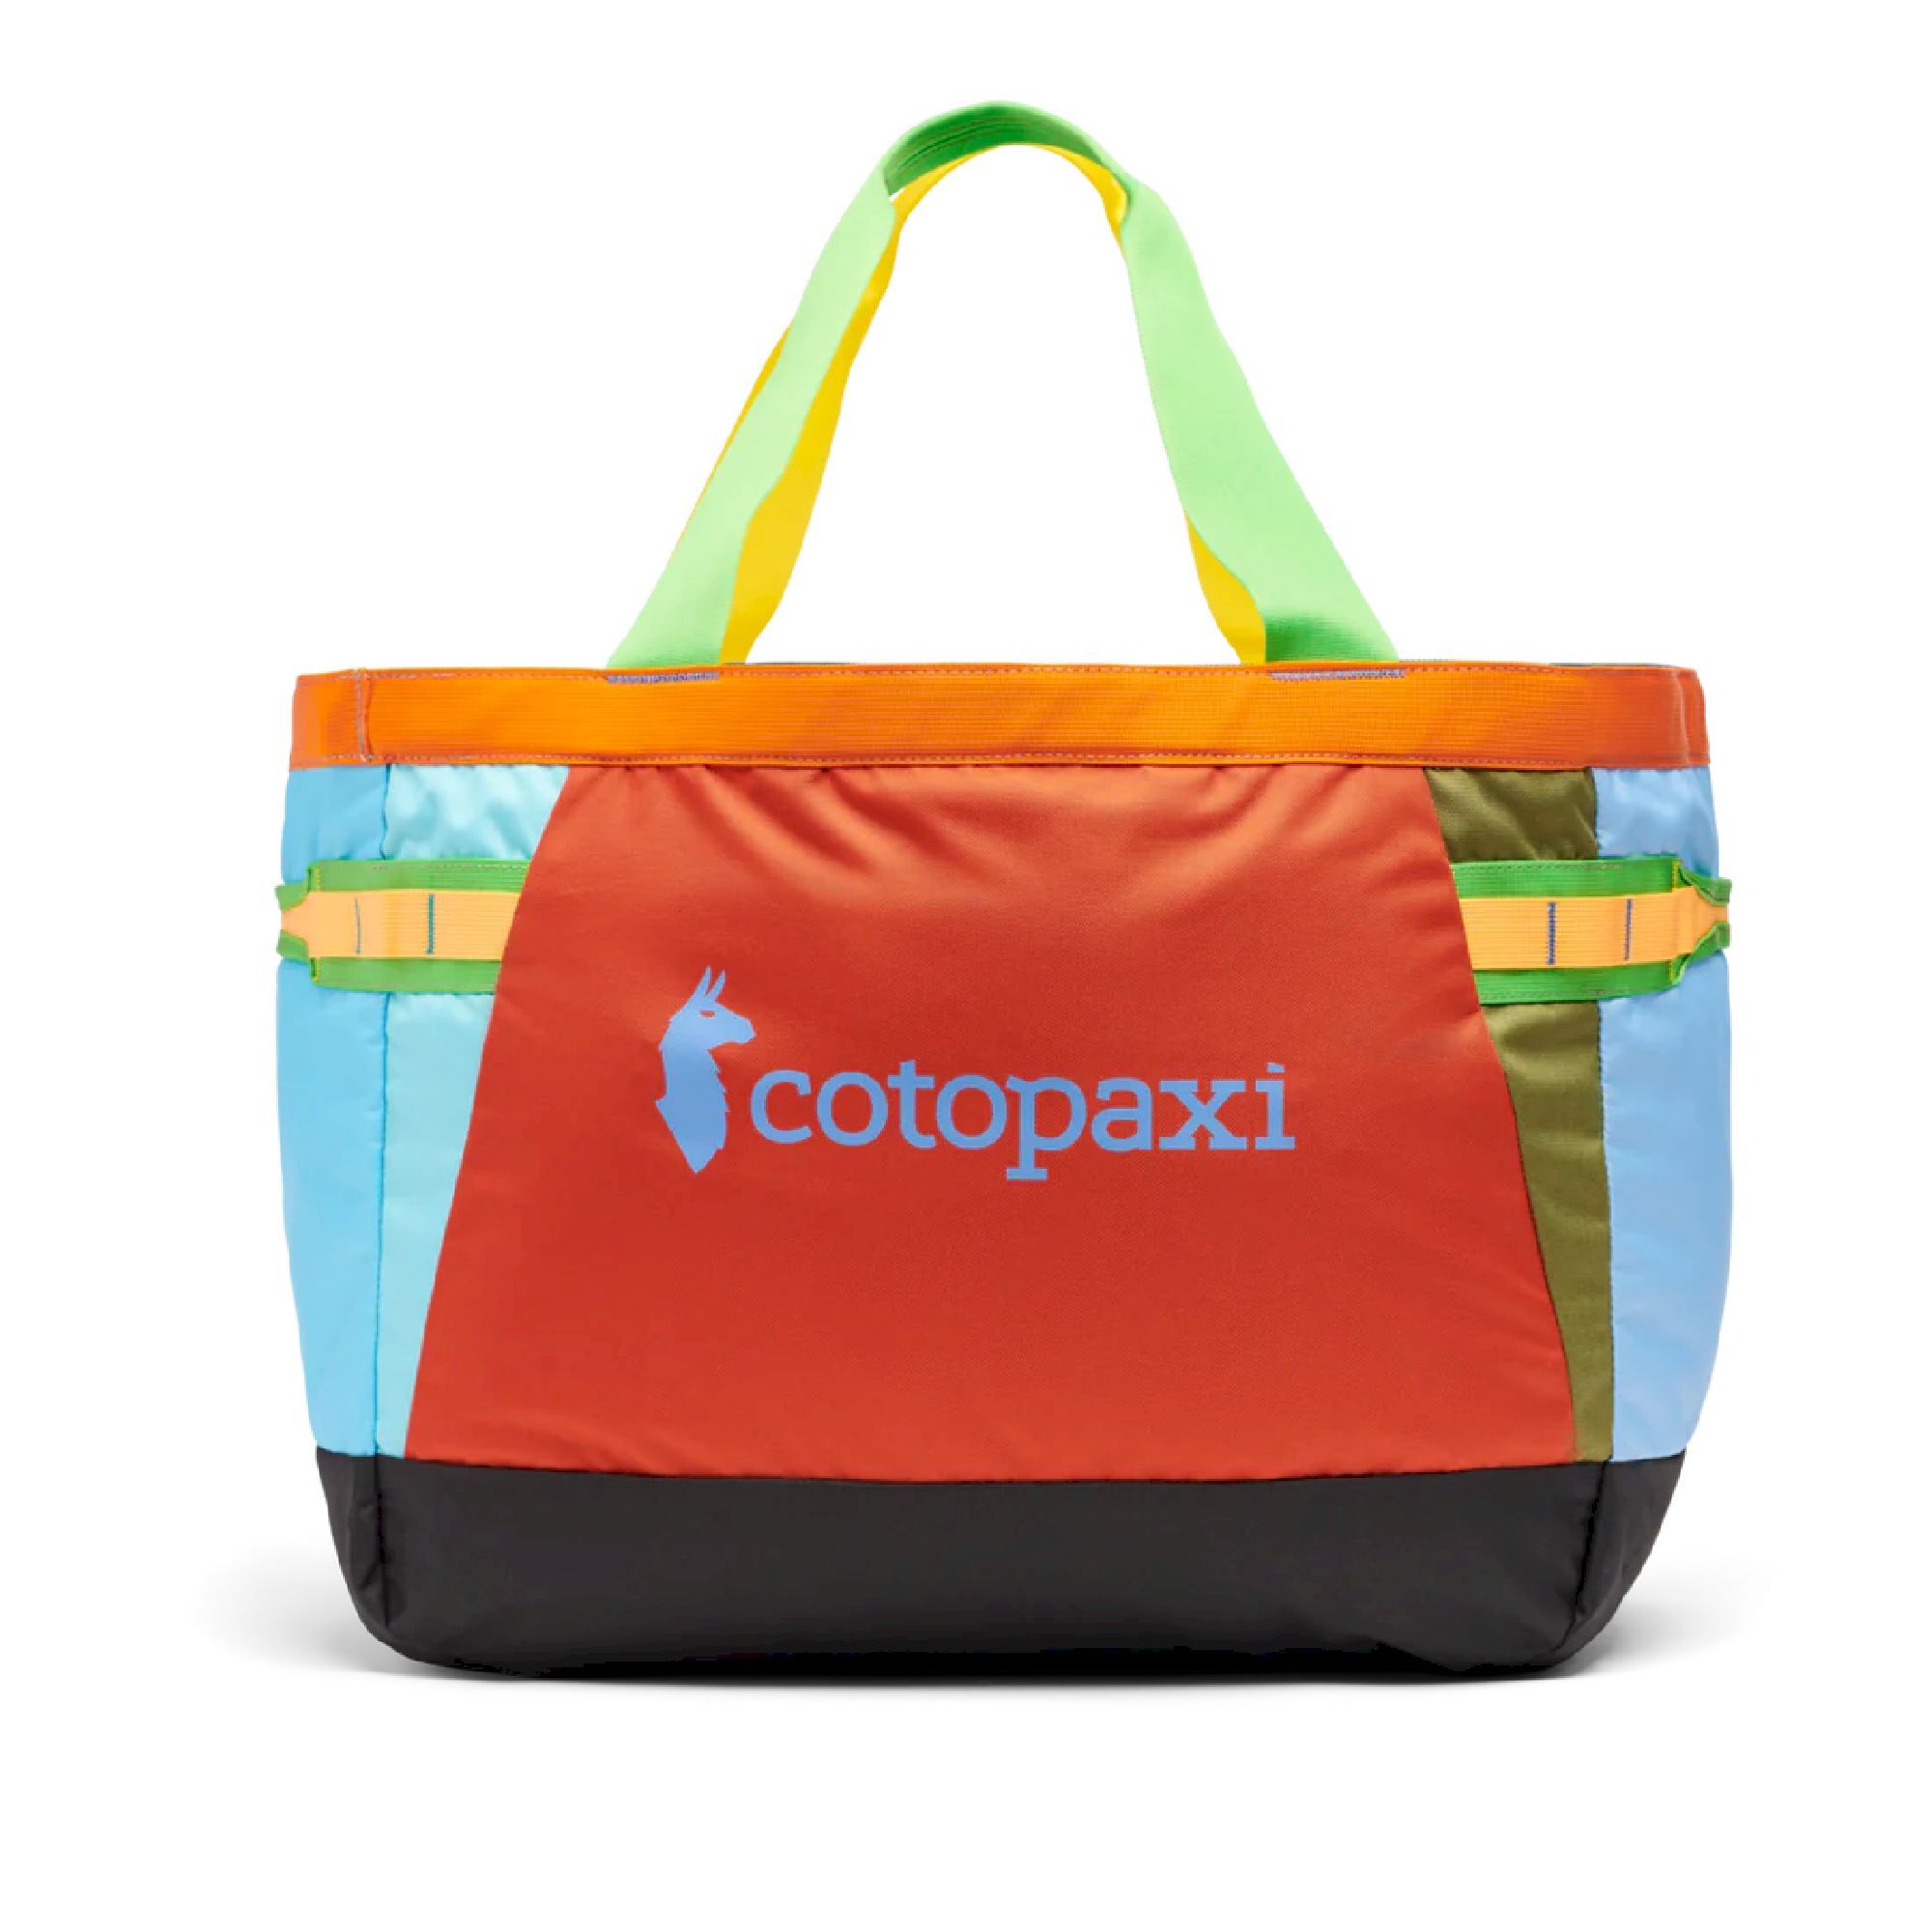 Cotopaxi Allpa 60L Gear Hauler Tote - Travel bag | Hardloop